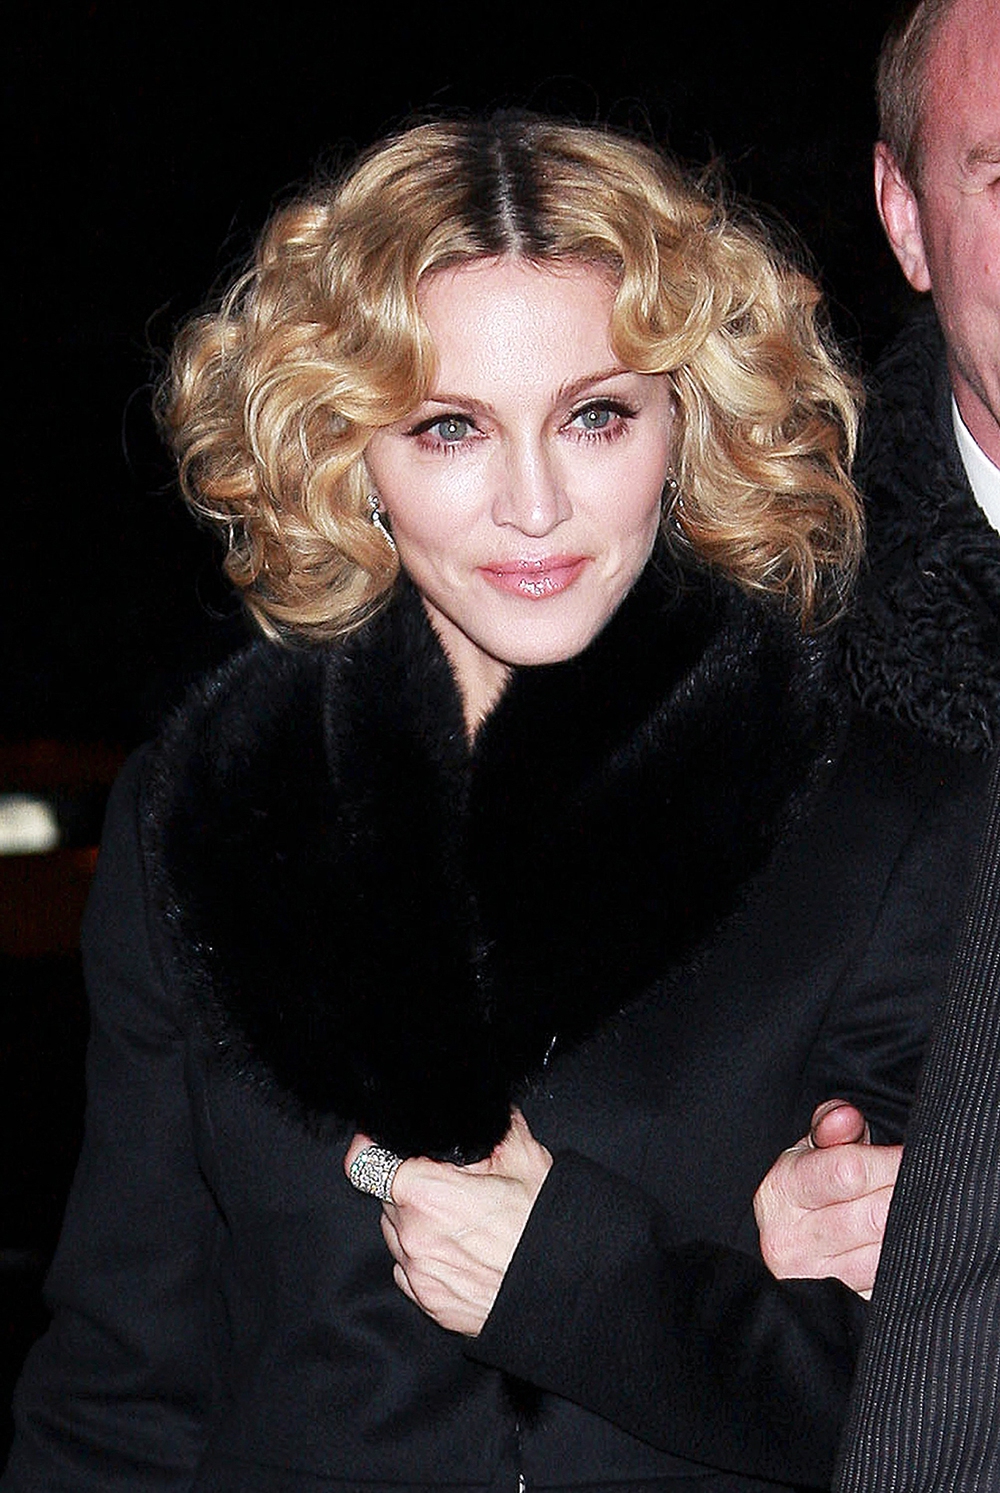 Nữ hoàng nhạc Pop Madonna: Hẹn hò toàn trai trẻ nhưng lại vương vấn mãi mối tình đơn phương không hồi đáp với tài tử nổi tiếng - Ảnh 13.